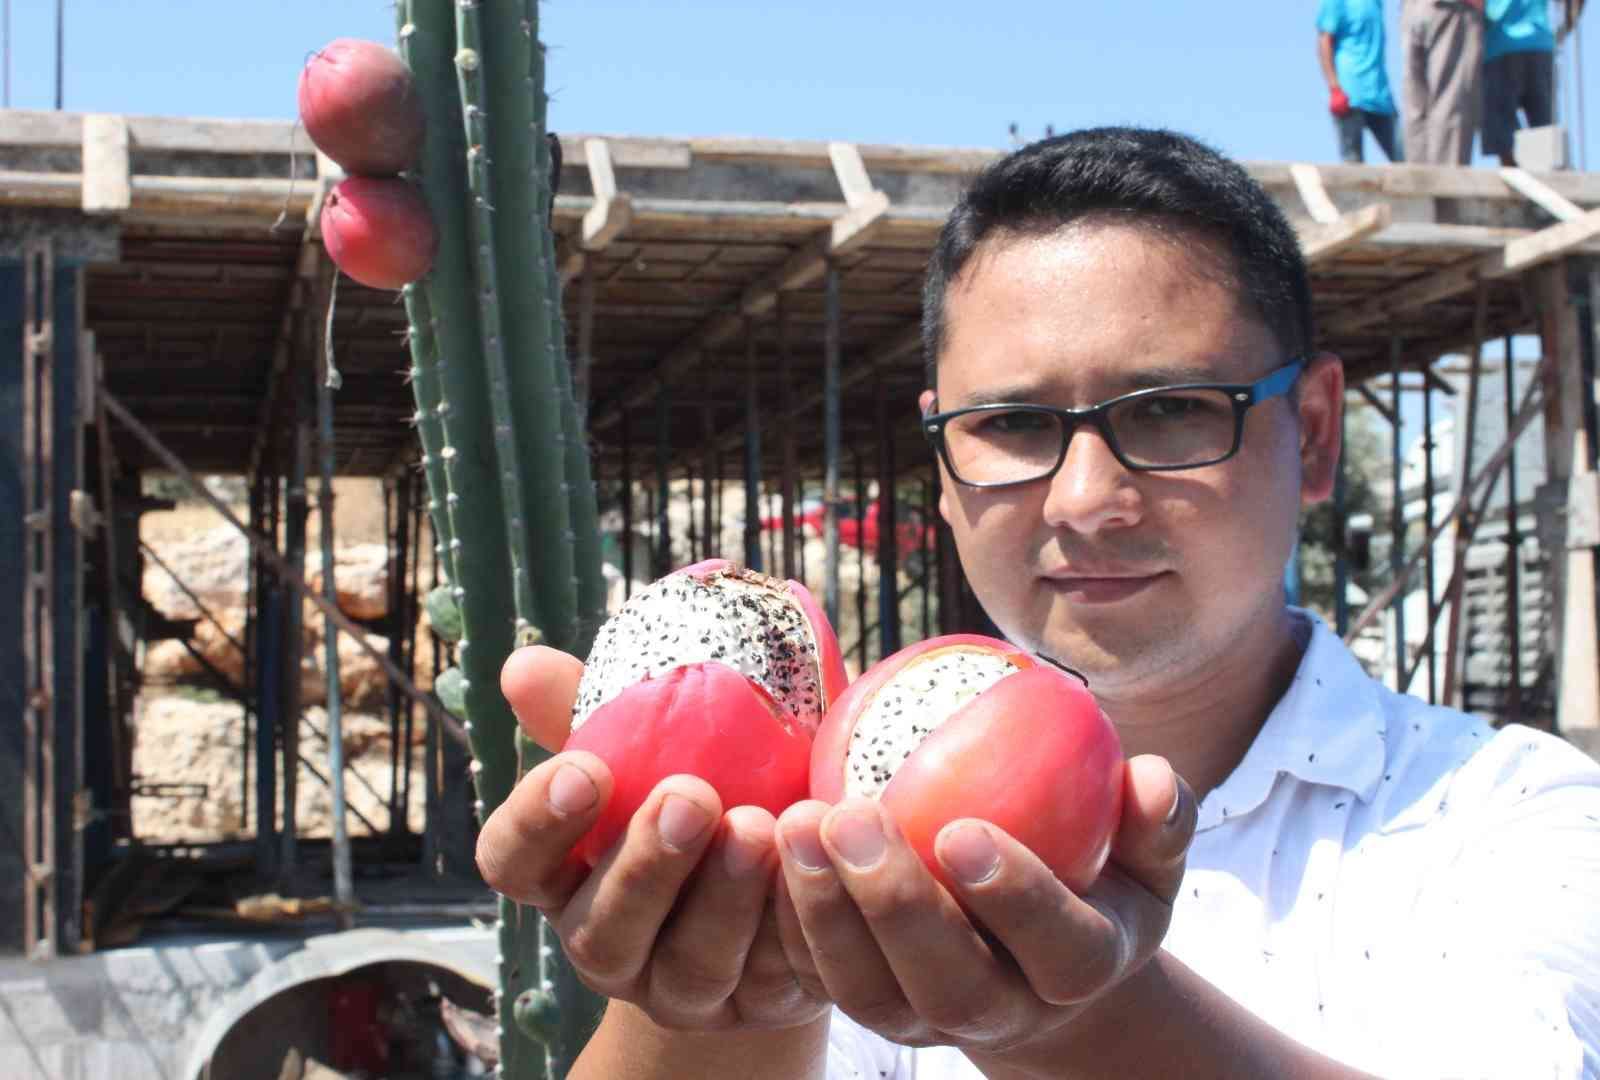 Mersin’de Güney Amerika kökenli Peru elması yetiştirildi